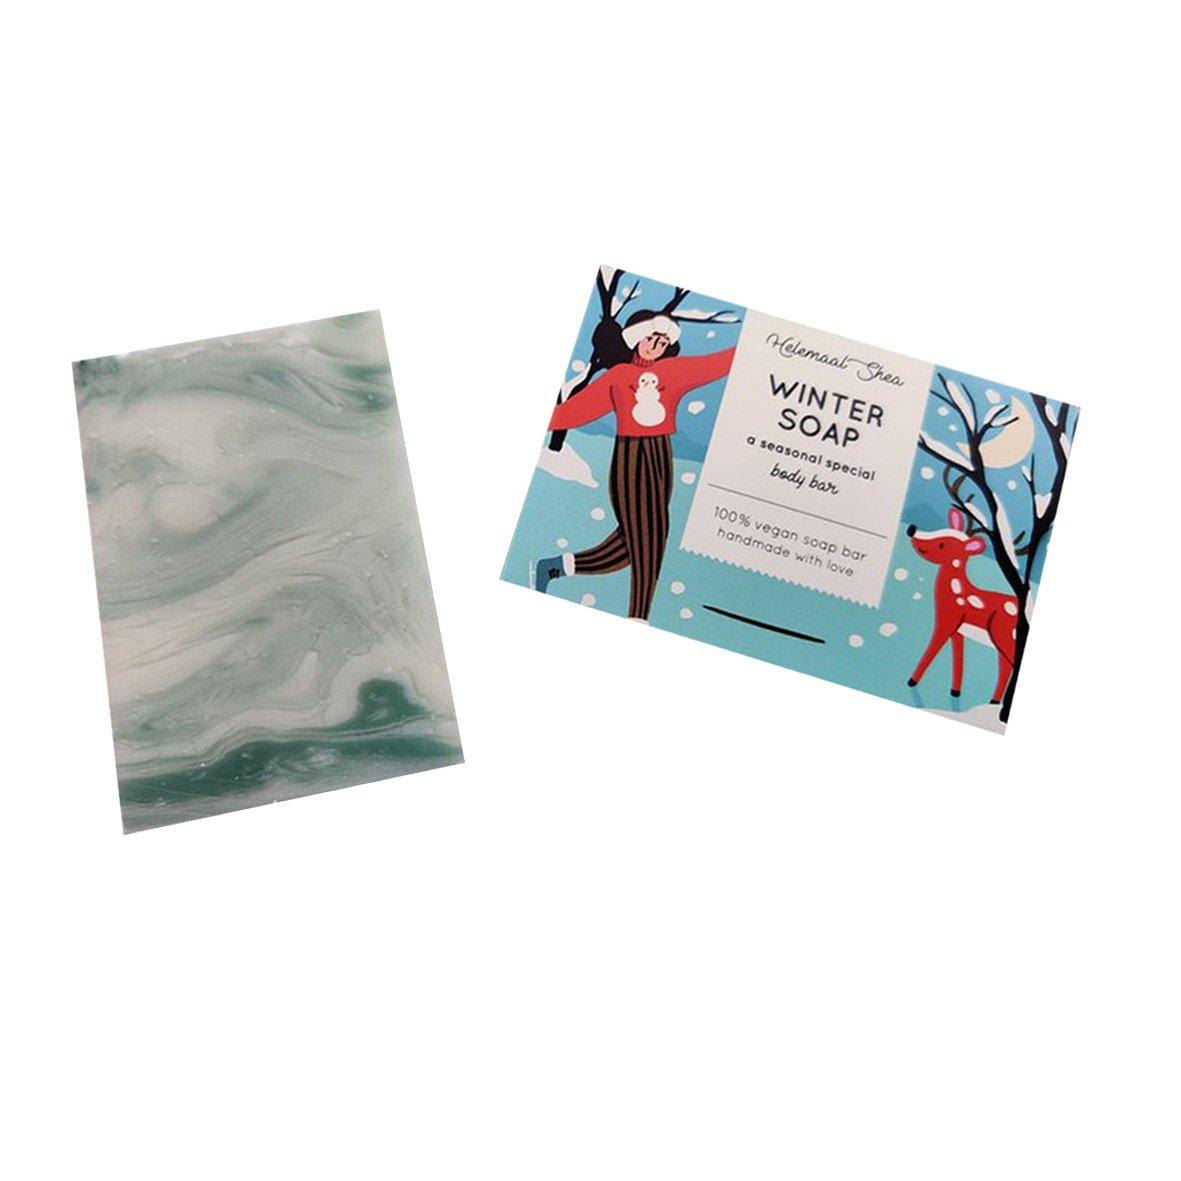 HelemaalShea Seasonal Special Winter Soap